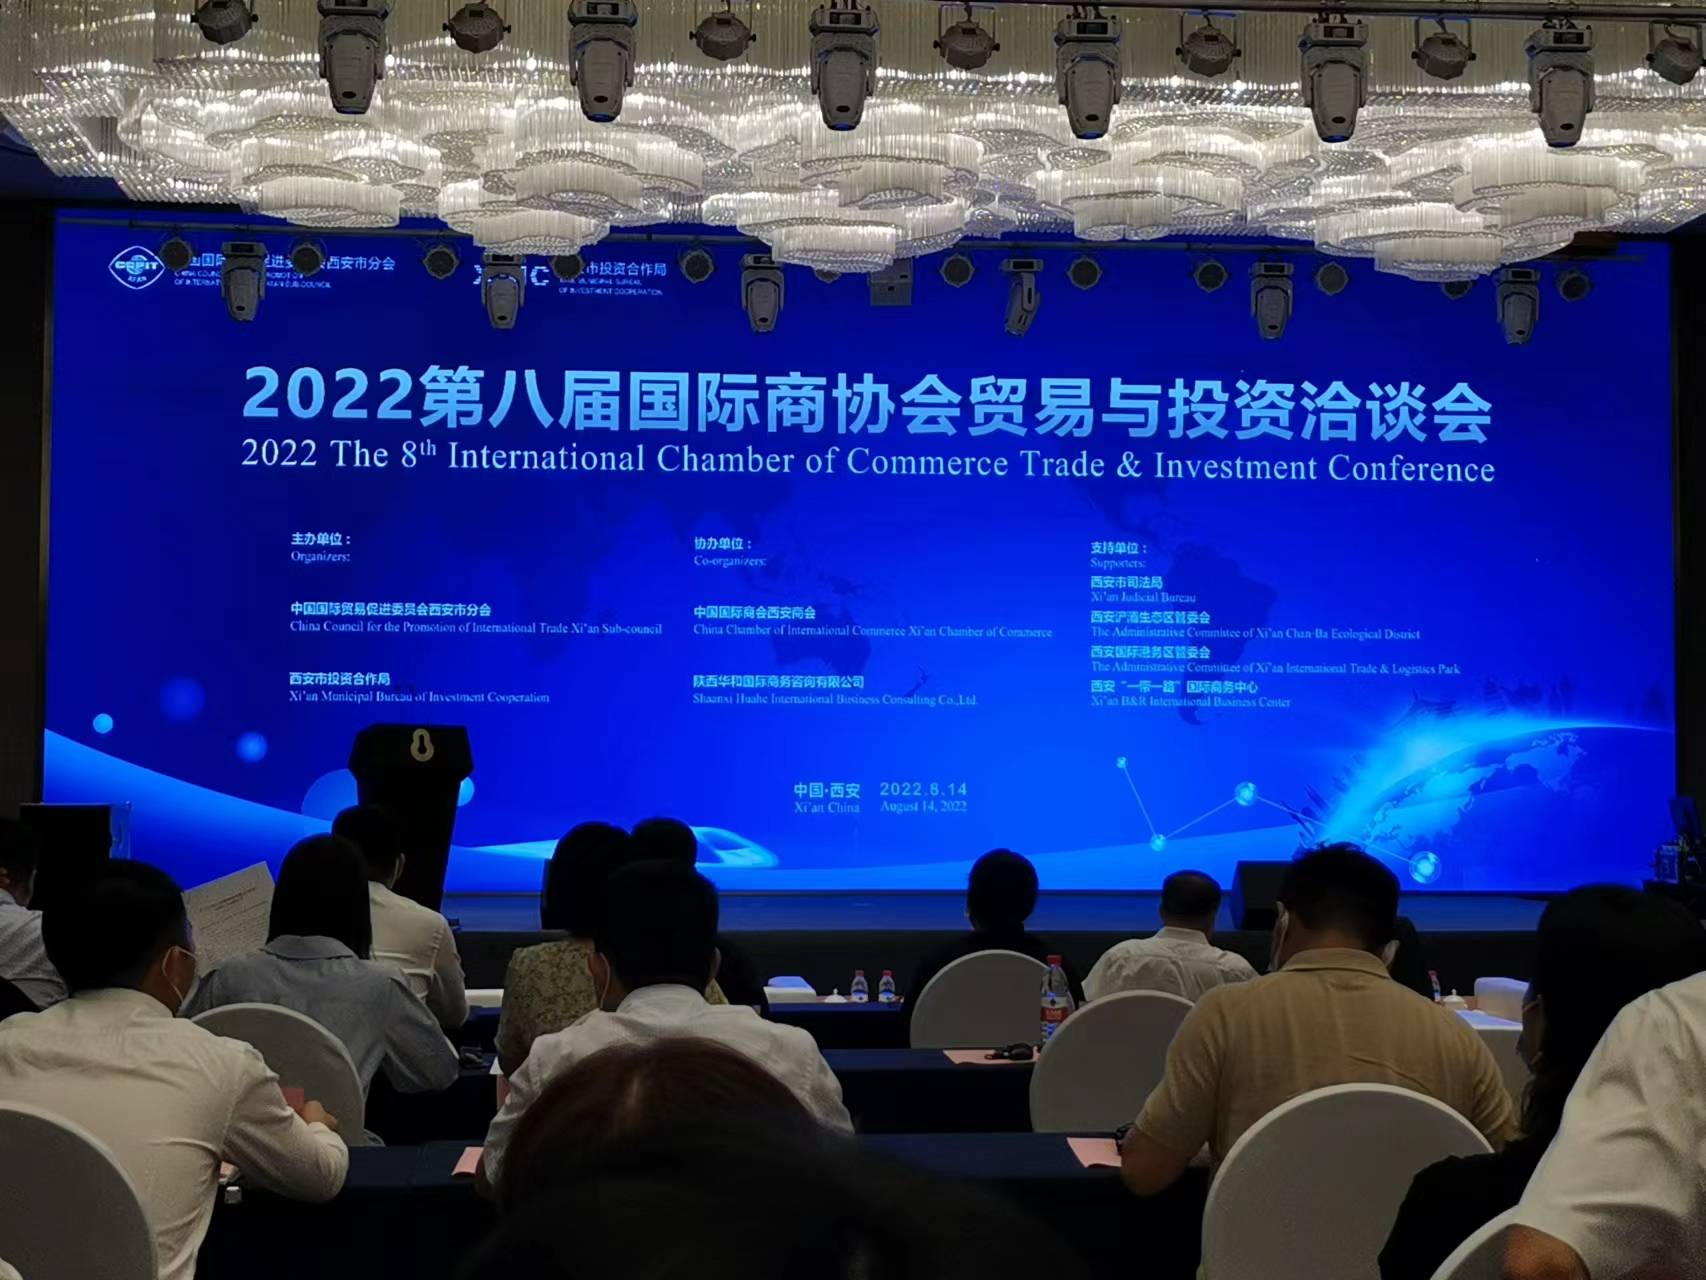 2022 die 8. internationale Handels- und Investitionskonferenz der Handelskammer